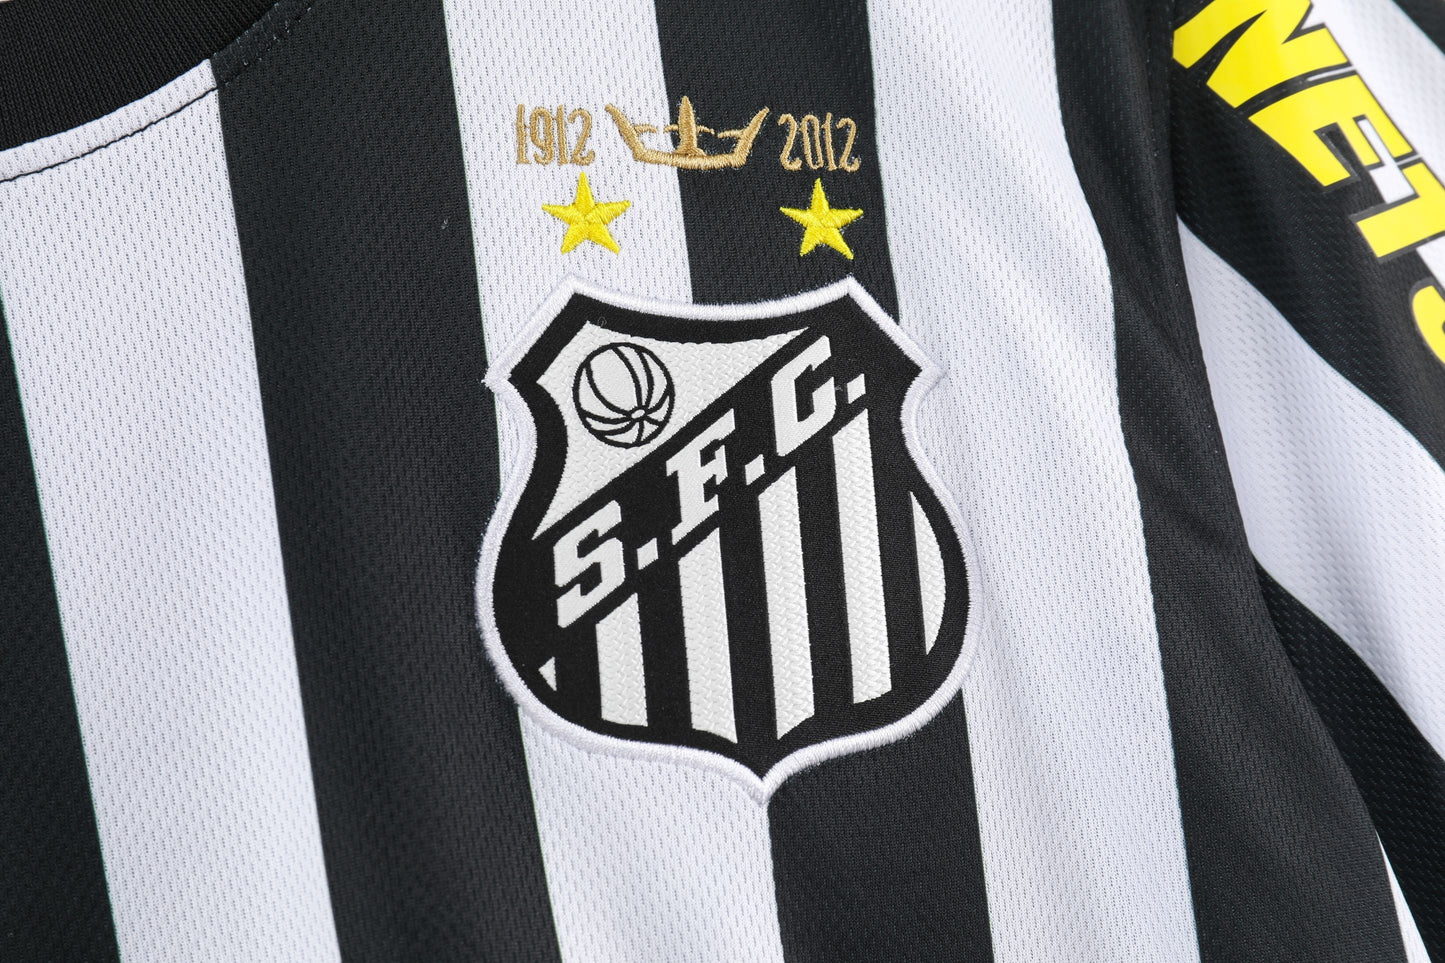 Santos away game in 2012/13 season